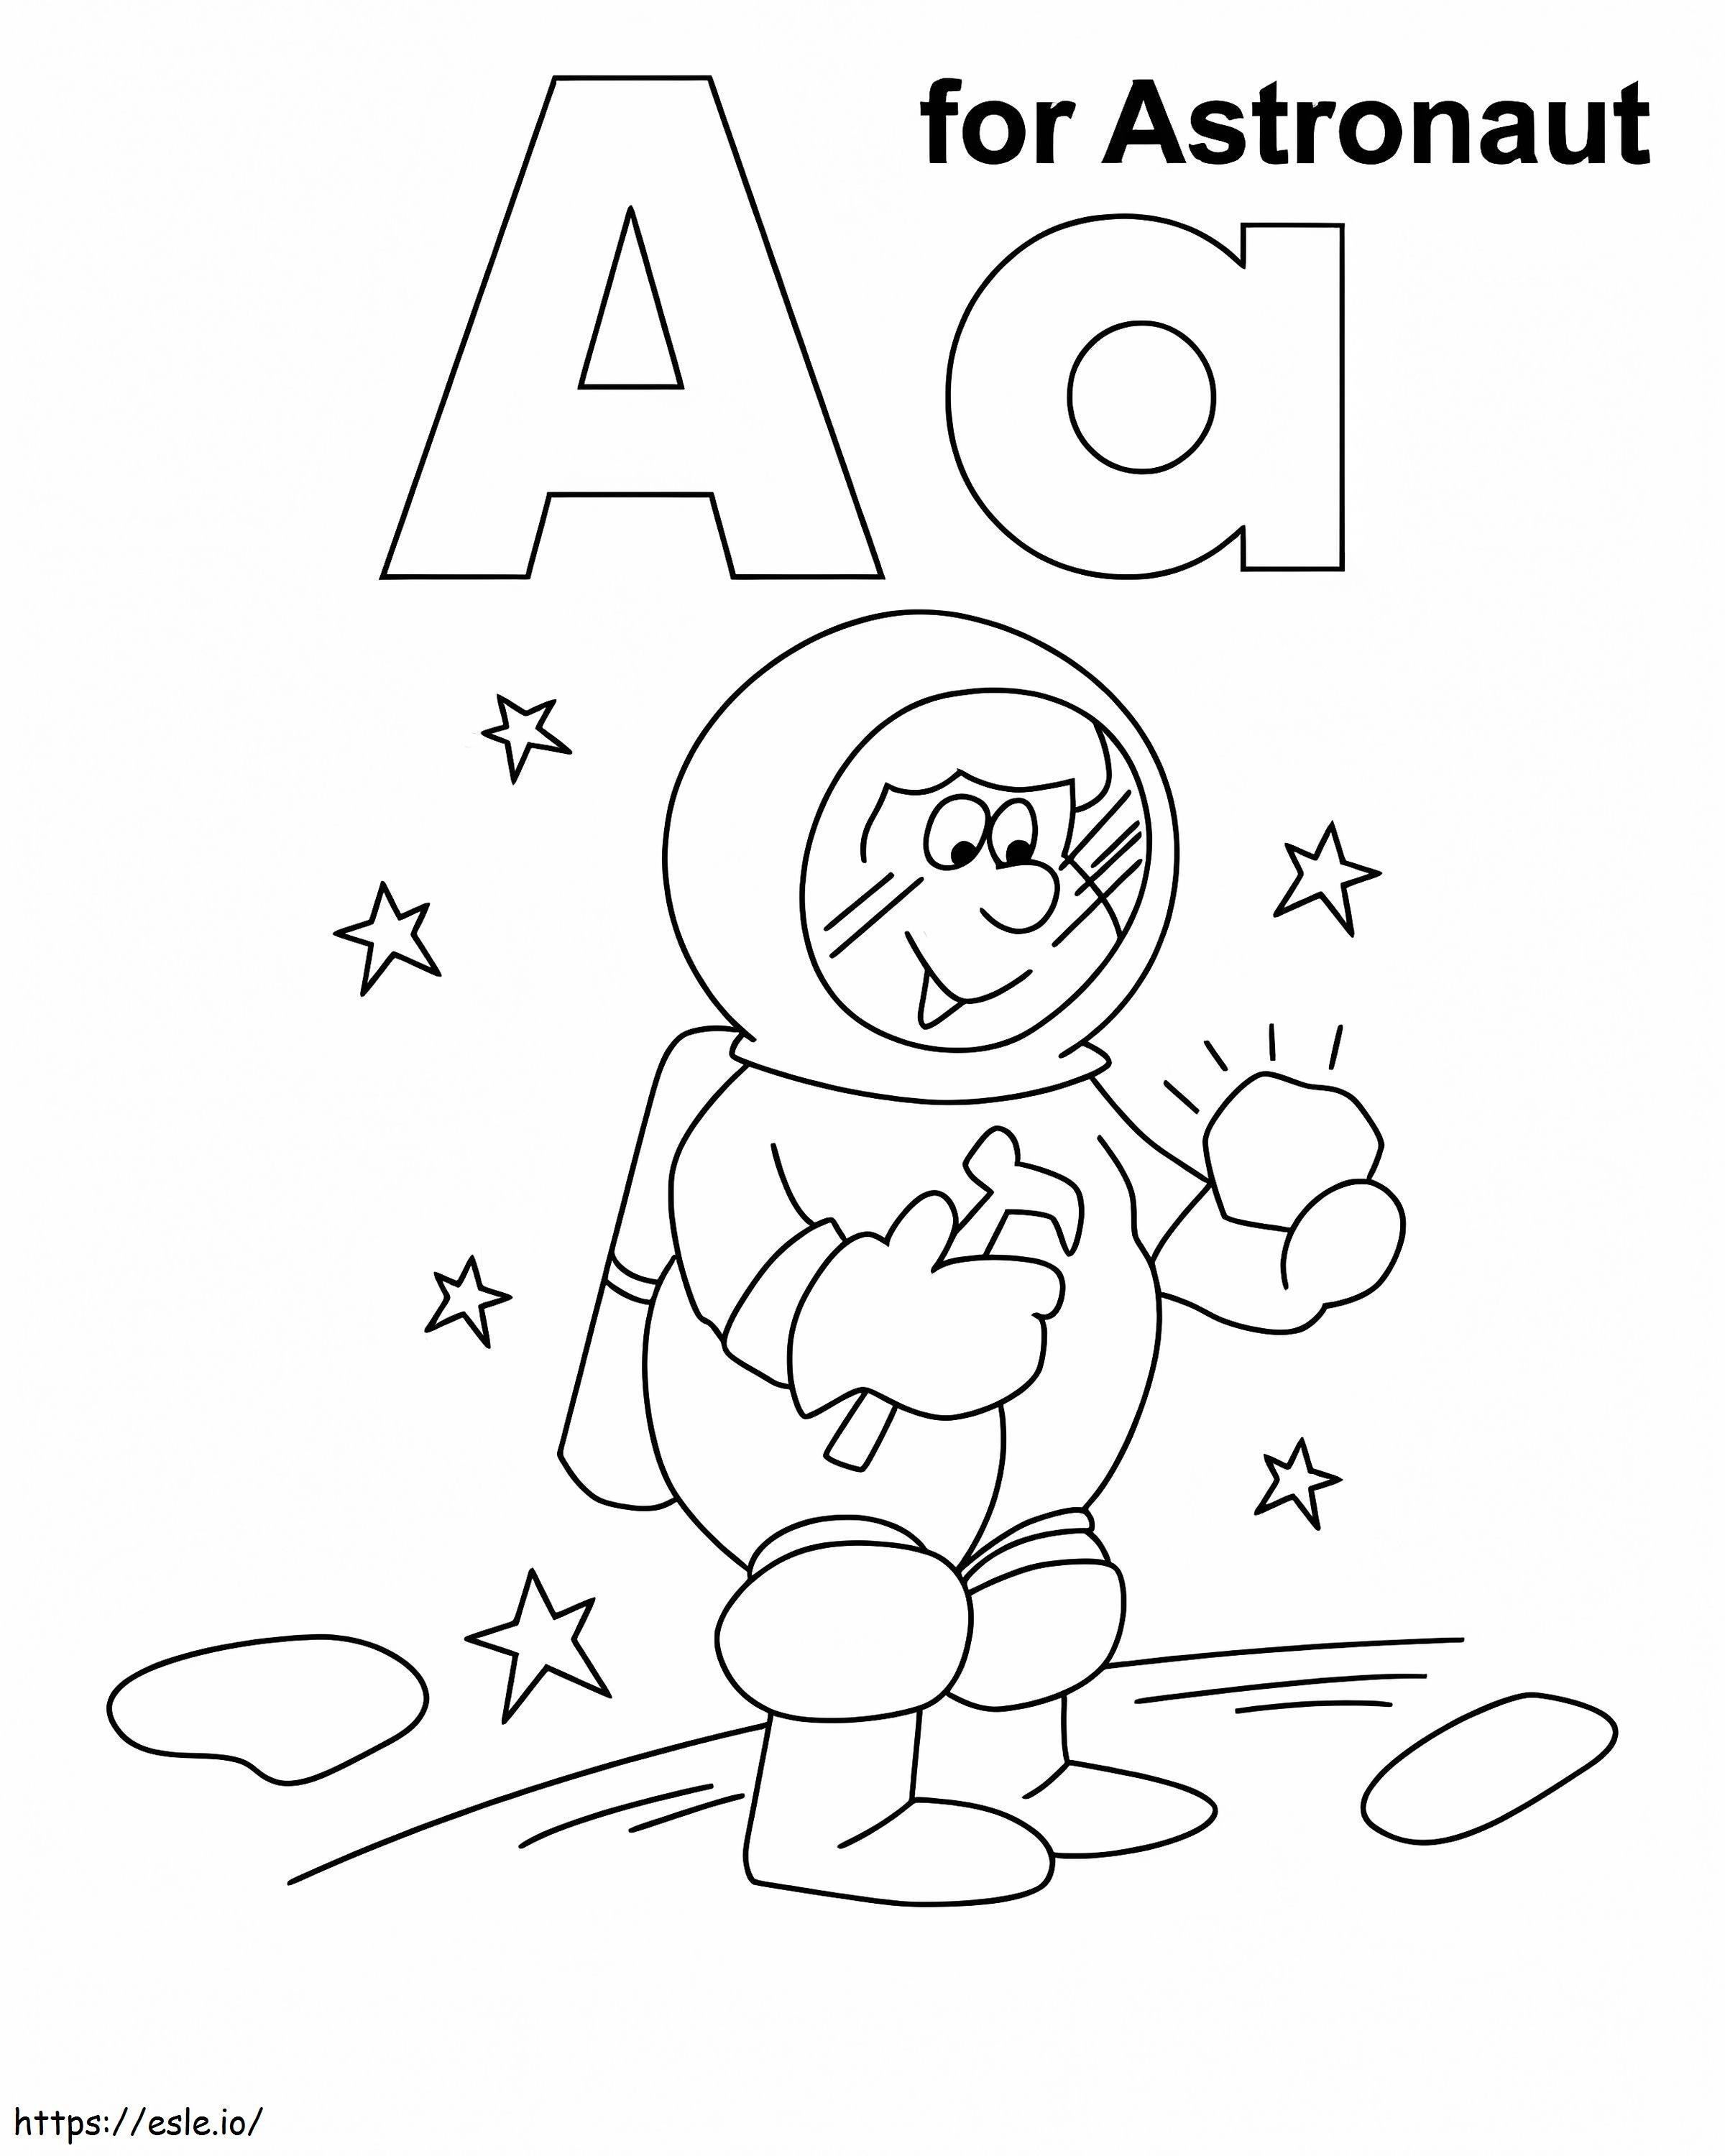 Litera A pentru astronaut de colorat